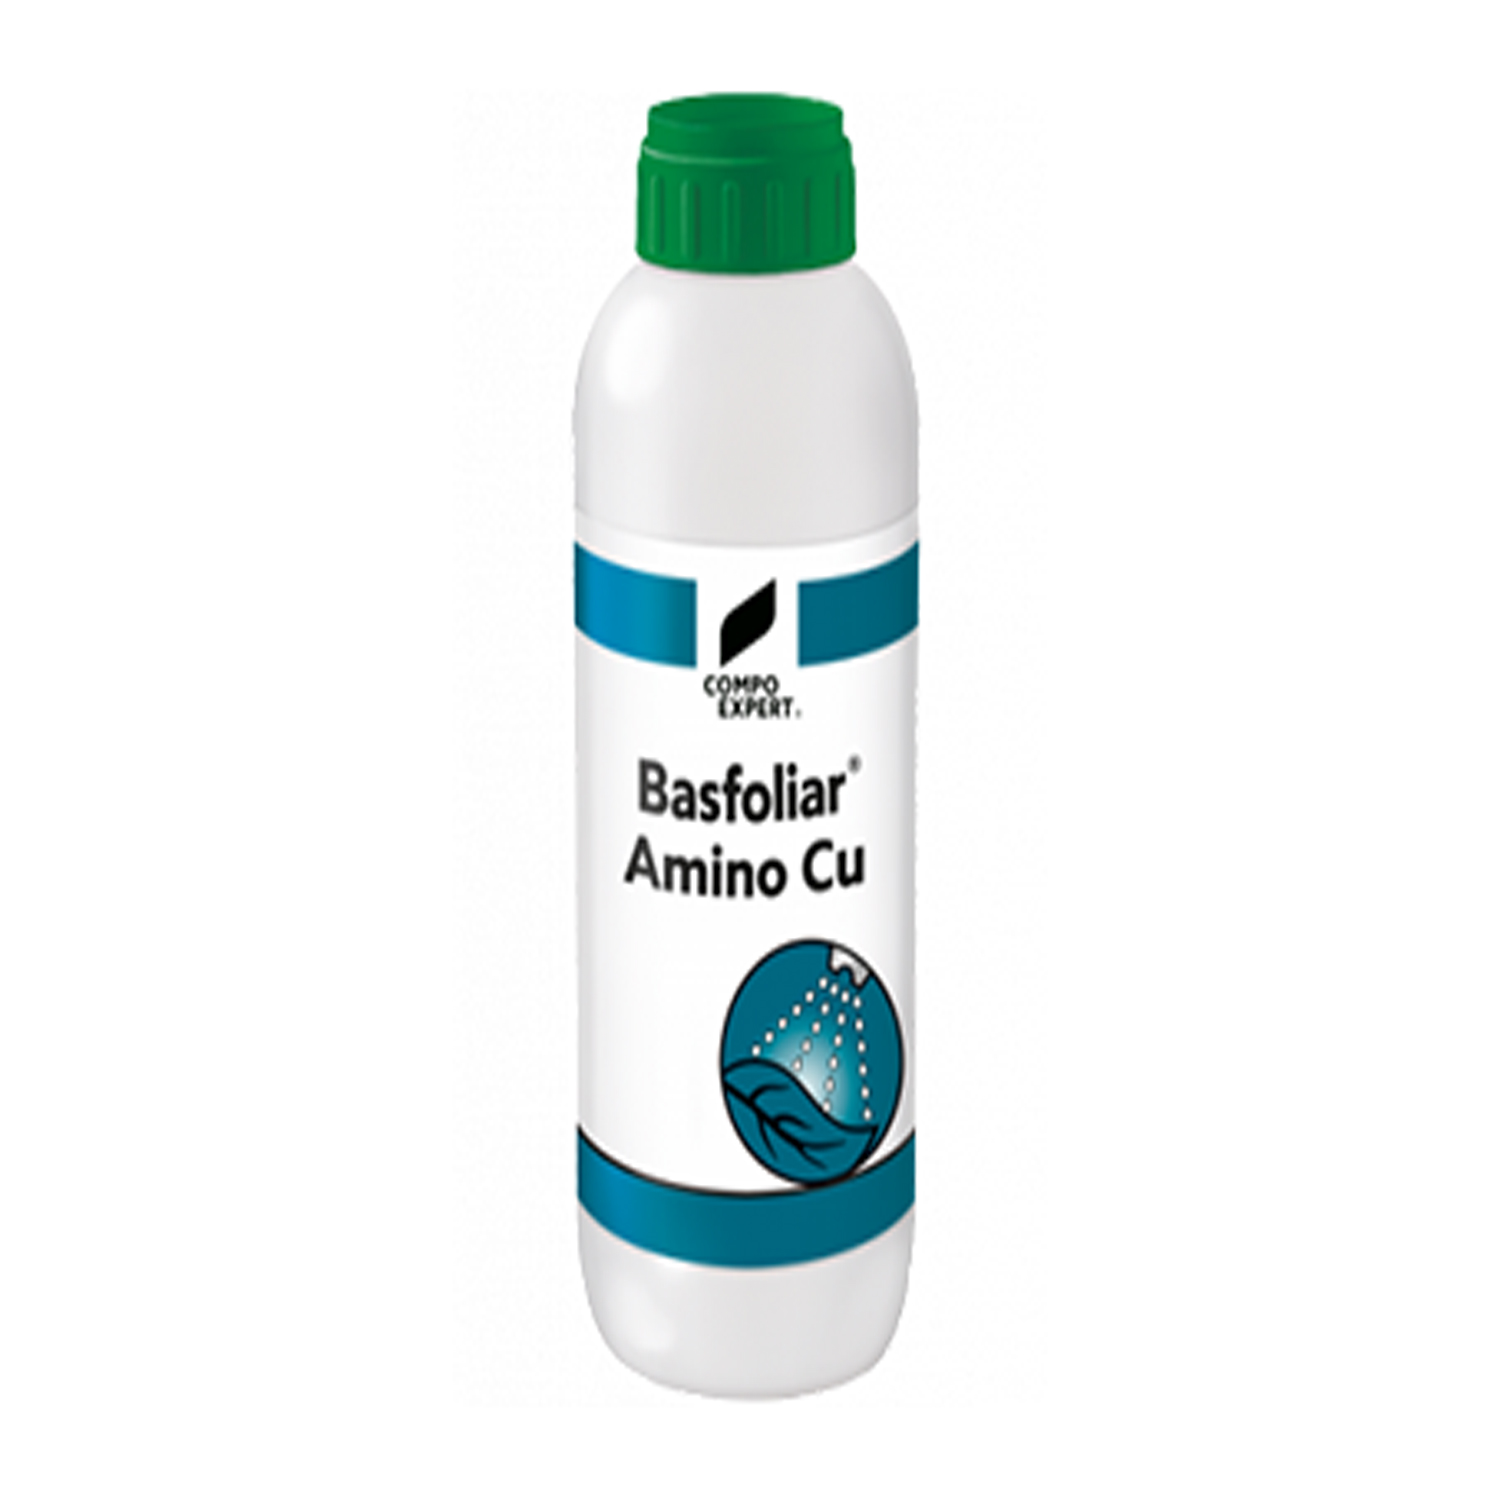 Rame Liquido Compo Expert Basfoliar Amino Cu 1lt